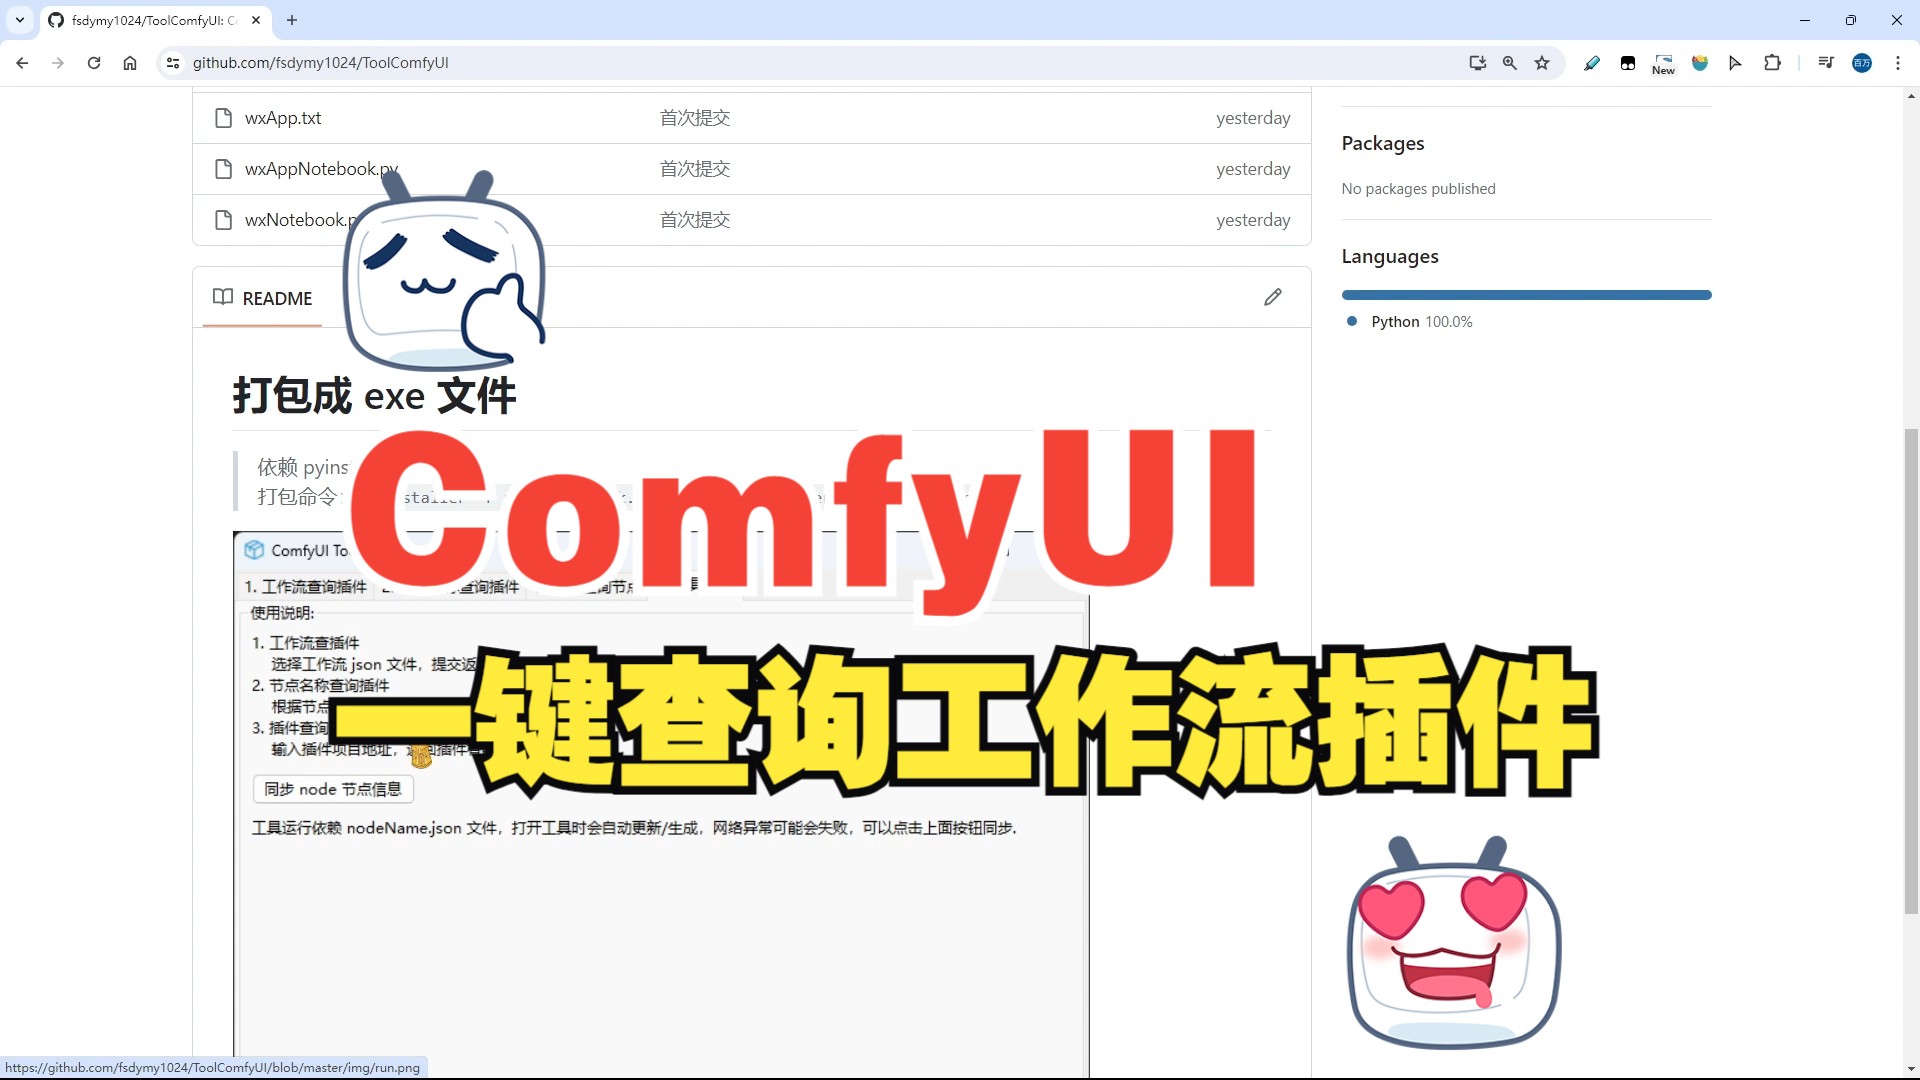 【ComfyUI】一键查询工作流依赖节点，妈妈再也不用担心我找不到插件了-ToolComfyUI